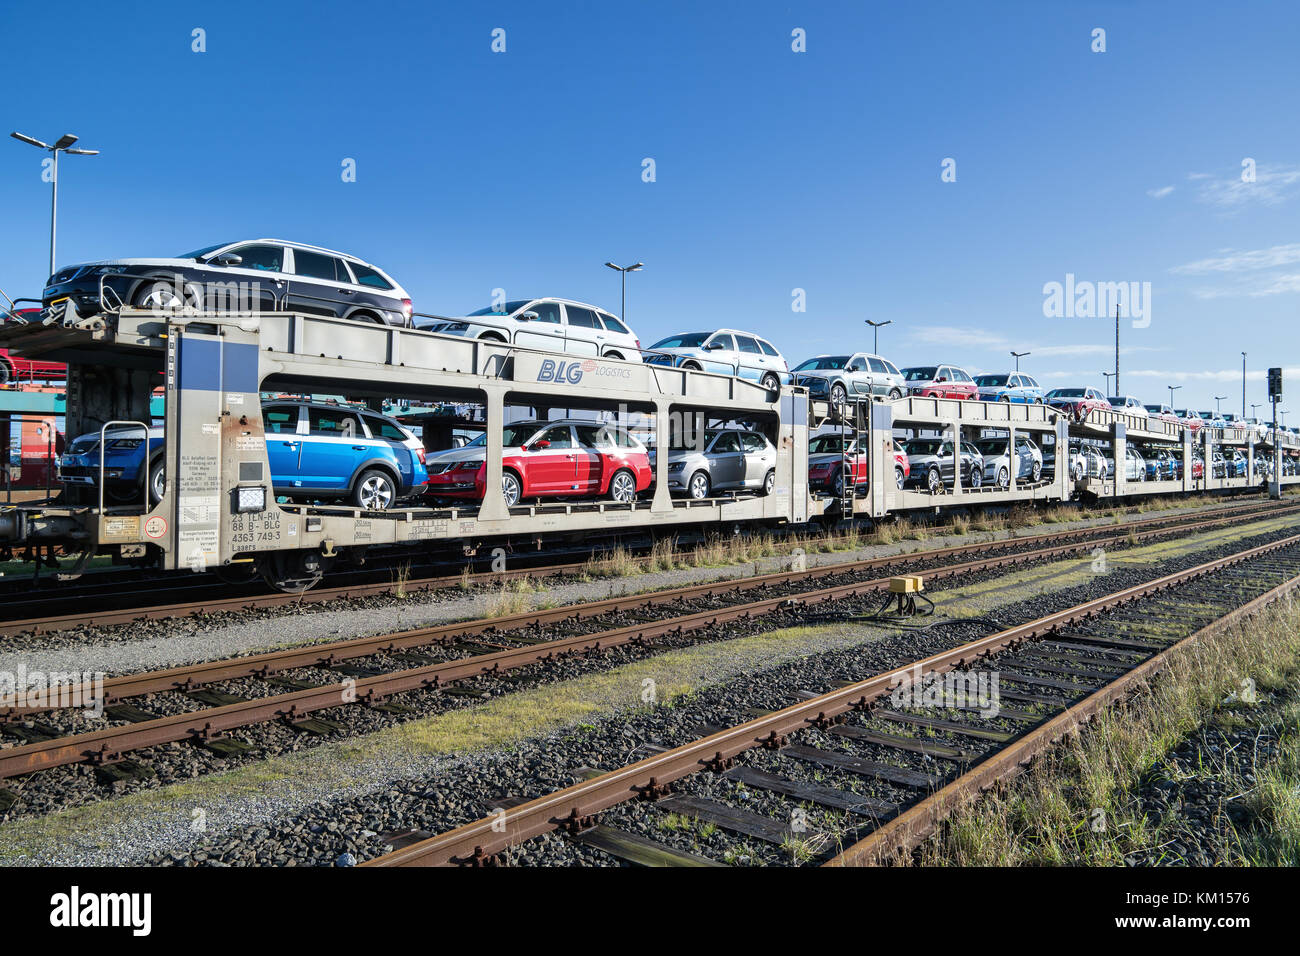 Autorack con nuova Skoda auto per esportazione verso la Scandinavia alla logistica blg seaport terminal in Cuxhaven, Germania Foto Stock